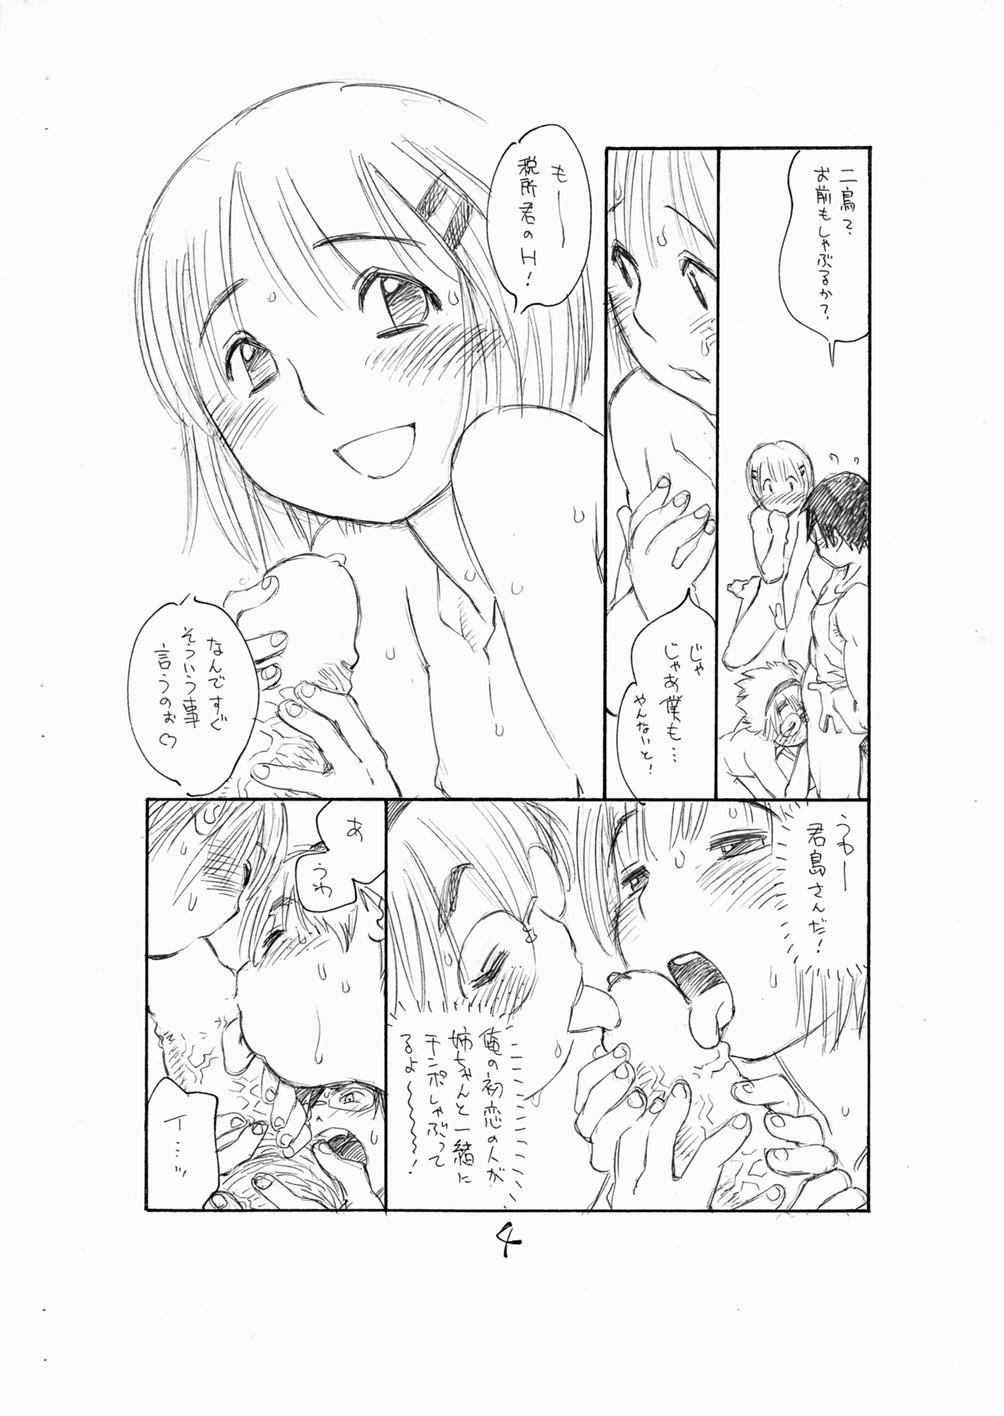 Blowing Bokutachi Otokonoko 3 - Hourou musuko Hardcore Porno - Page 6